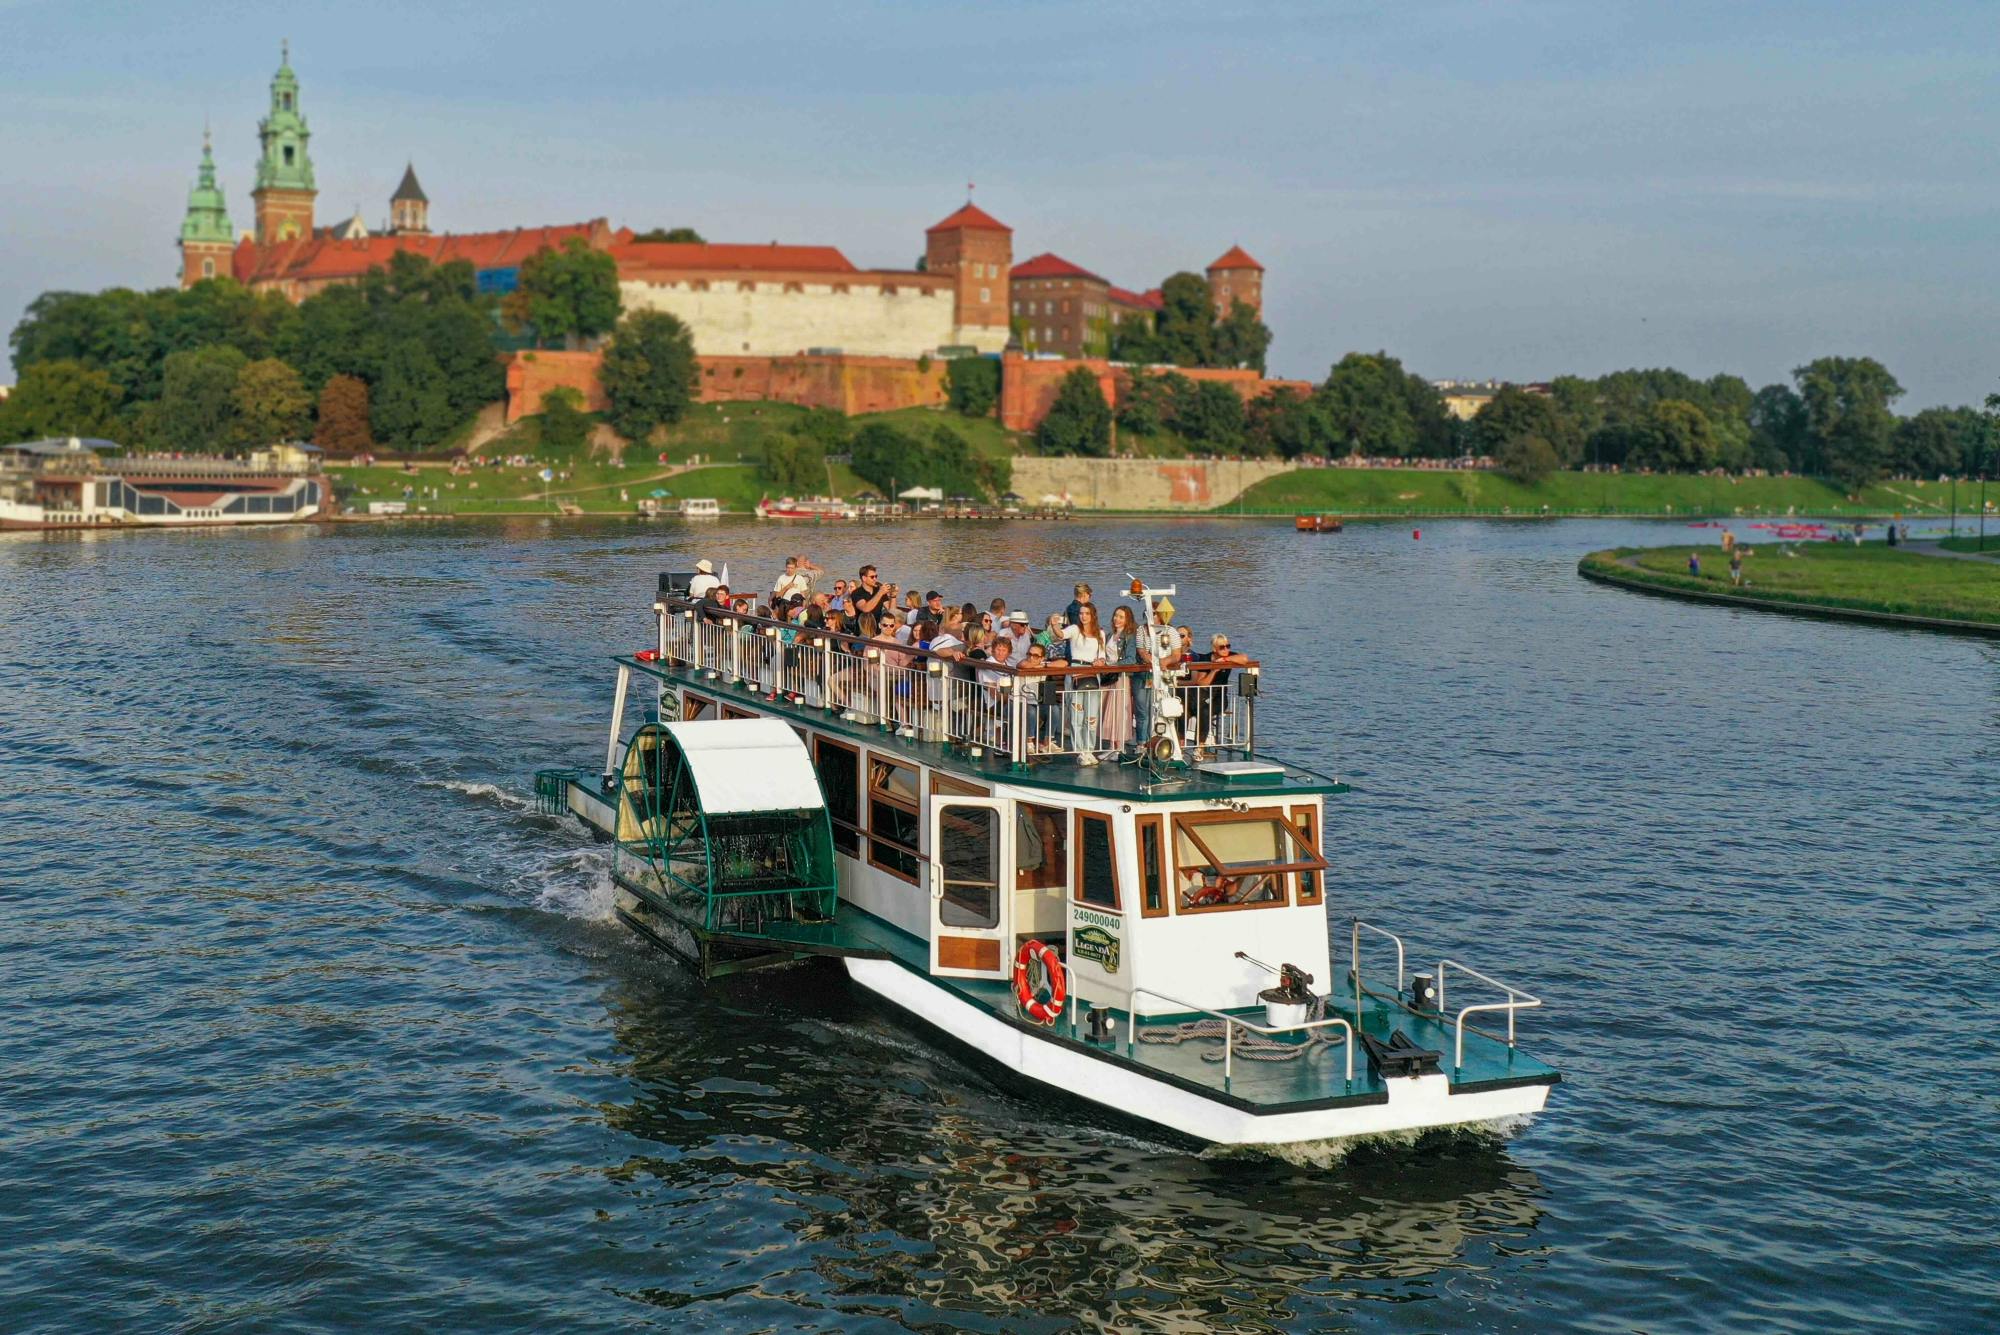 Croisière touristique sur la Vistule à Cracovie